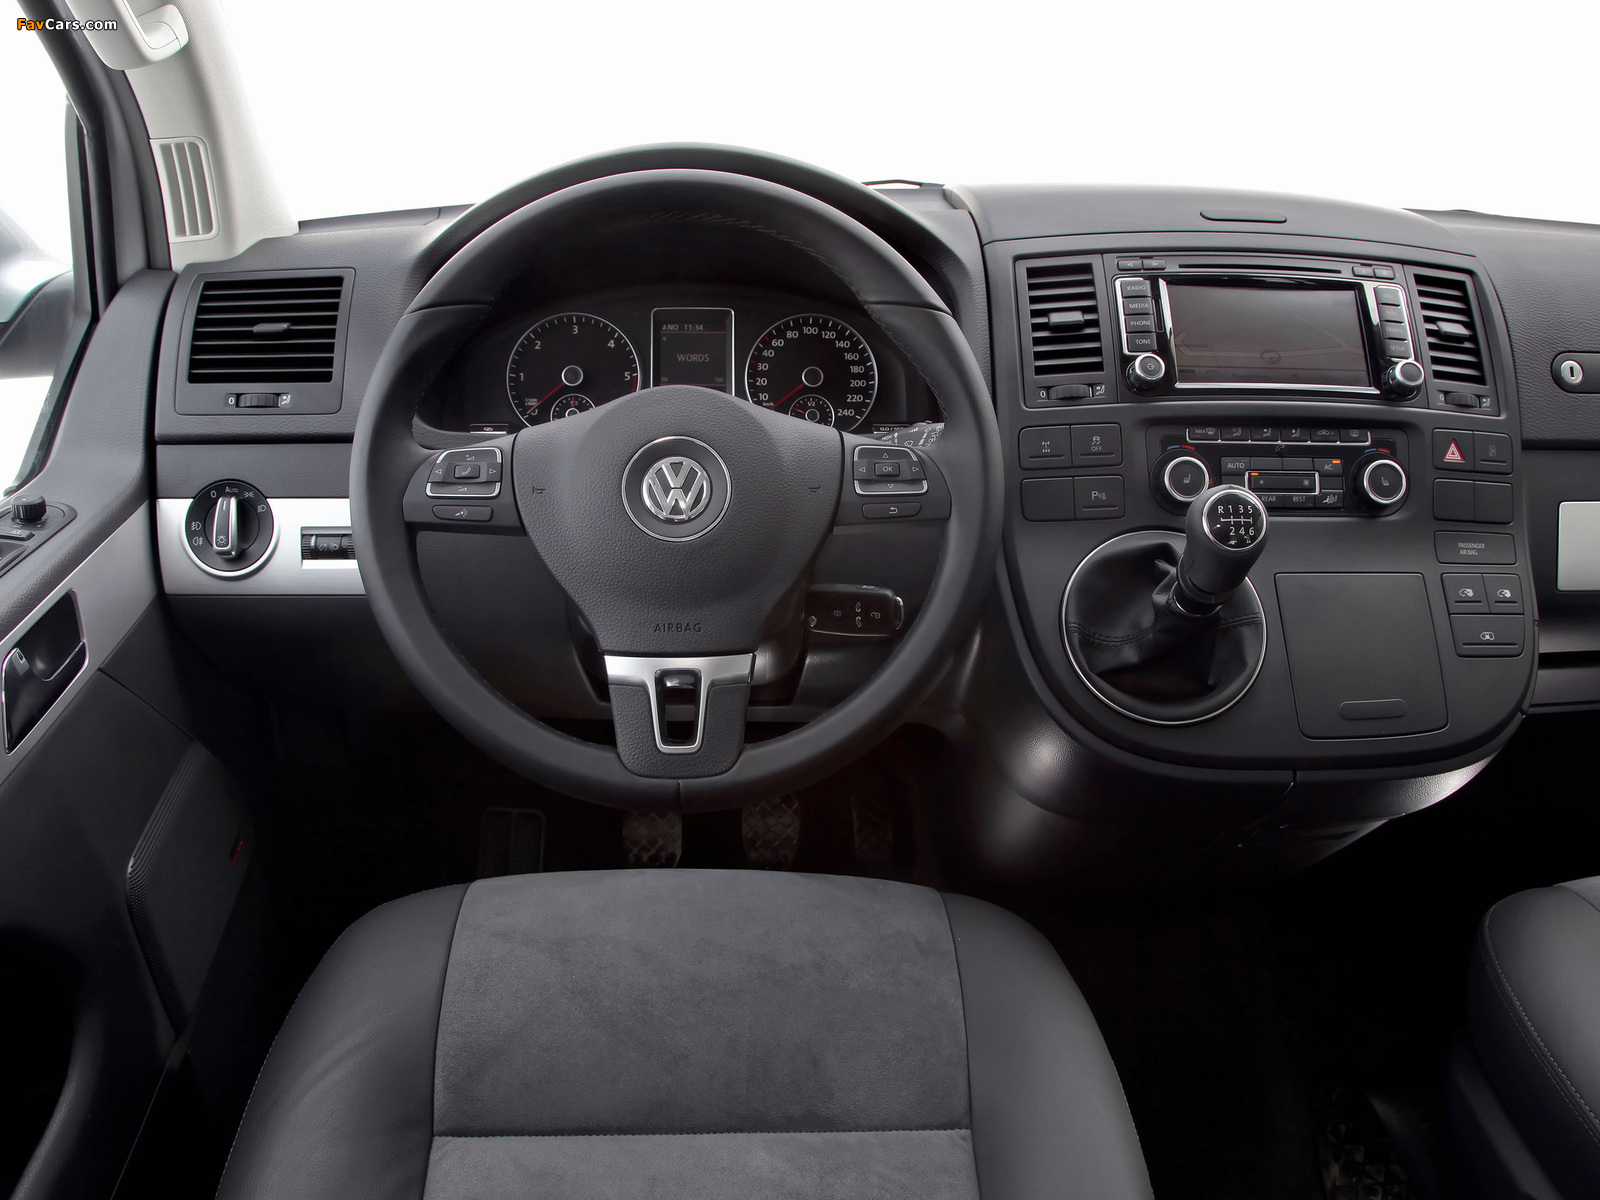 Volkswagen T5 Multivan Comfortline 2009 photos (1600 x 1200)